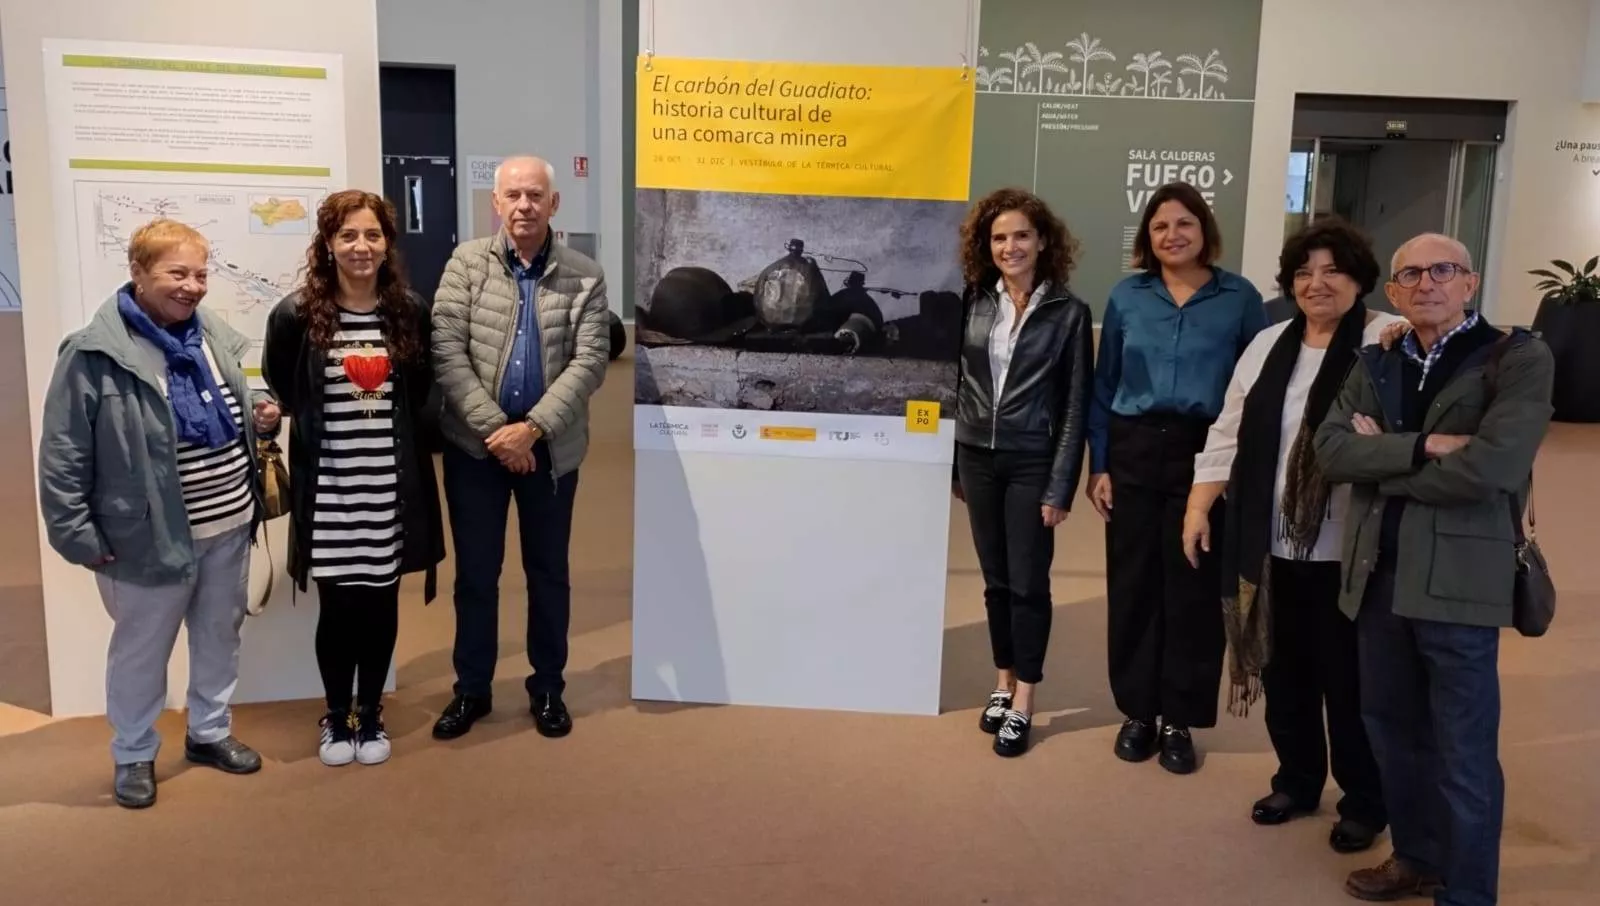 La Térmica Cultural de Ponferrada abre una muestra dedicada al patrimonio minero de la cuenca del Guadiato, en Córdoba